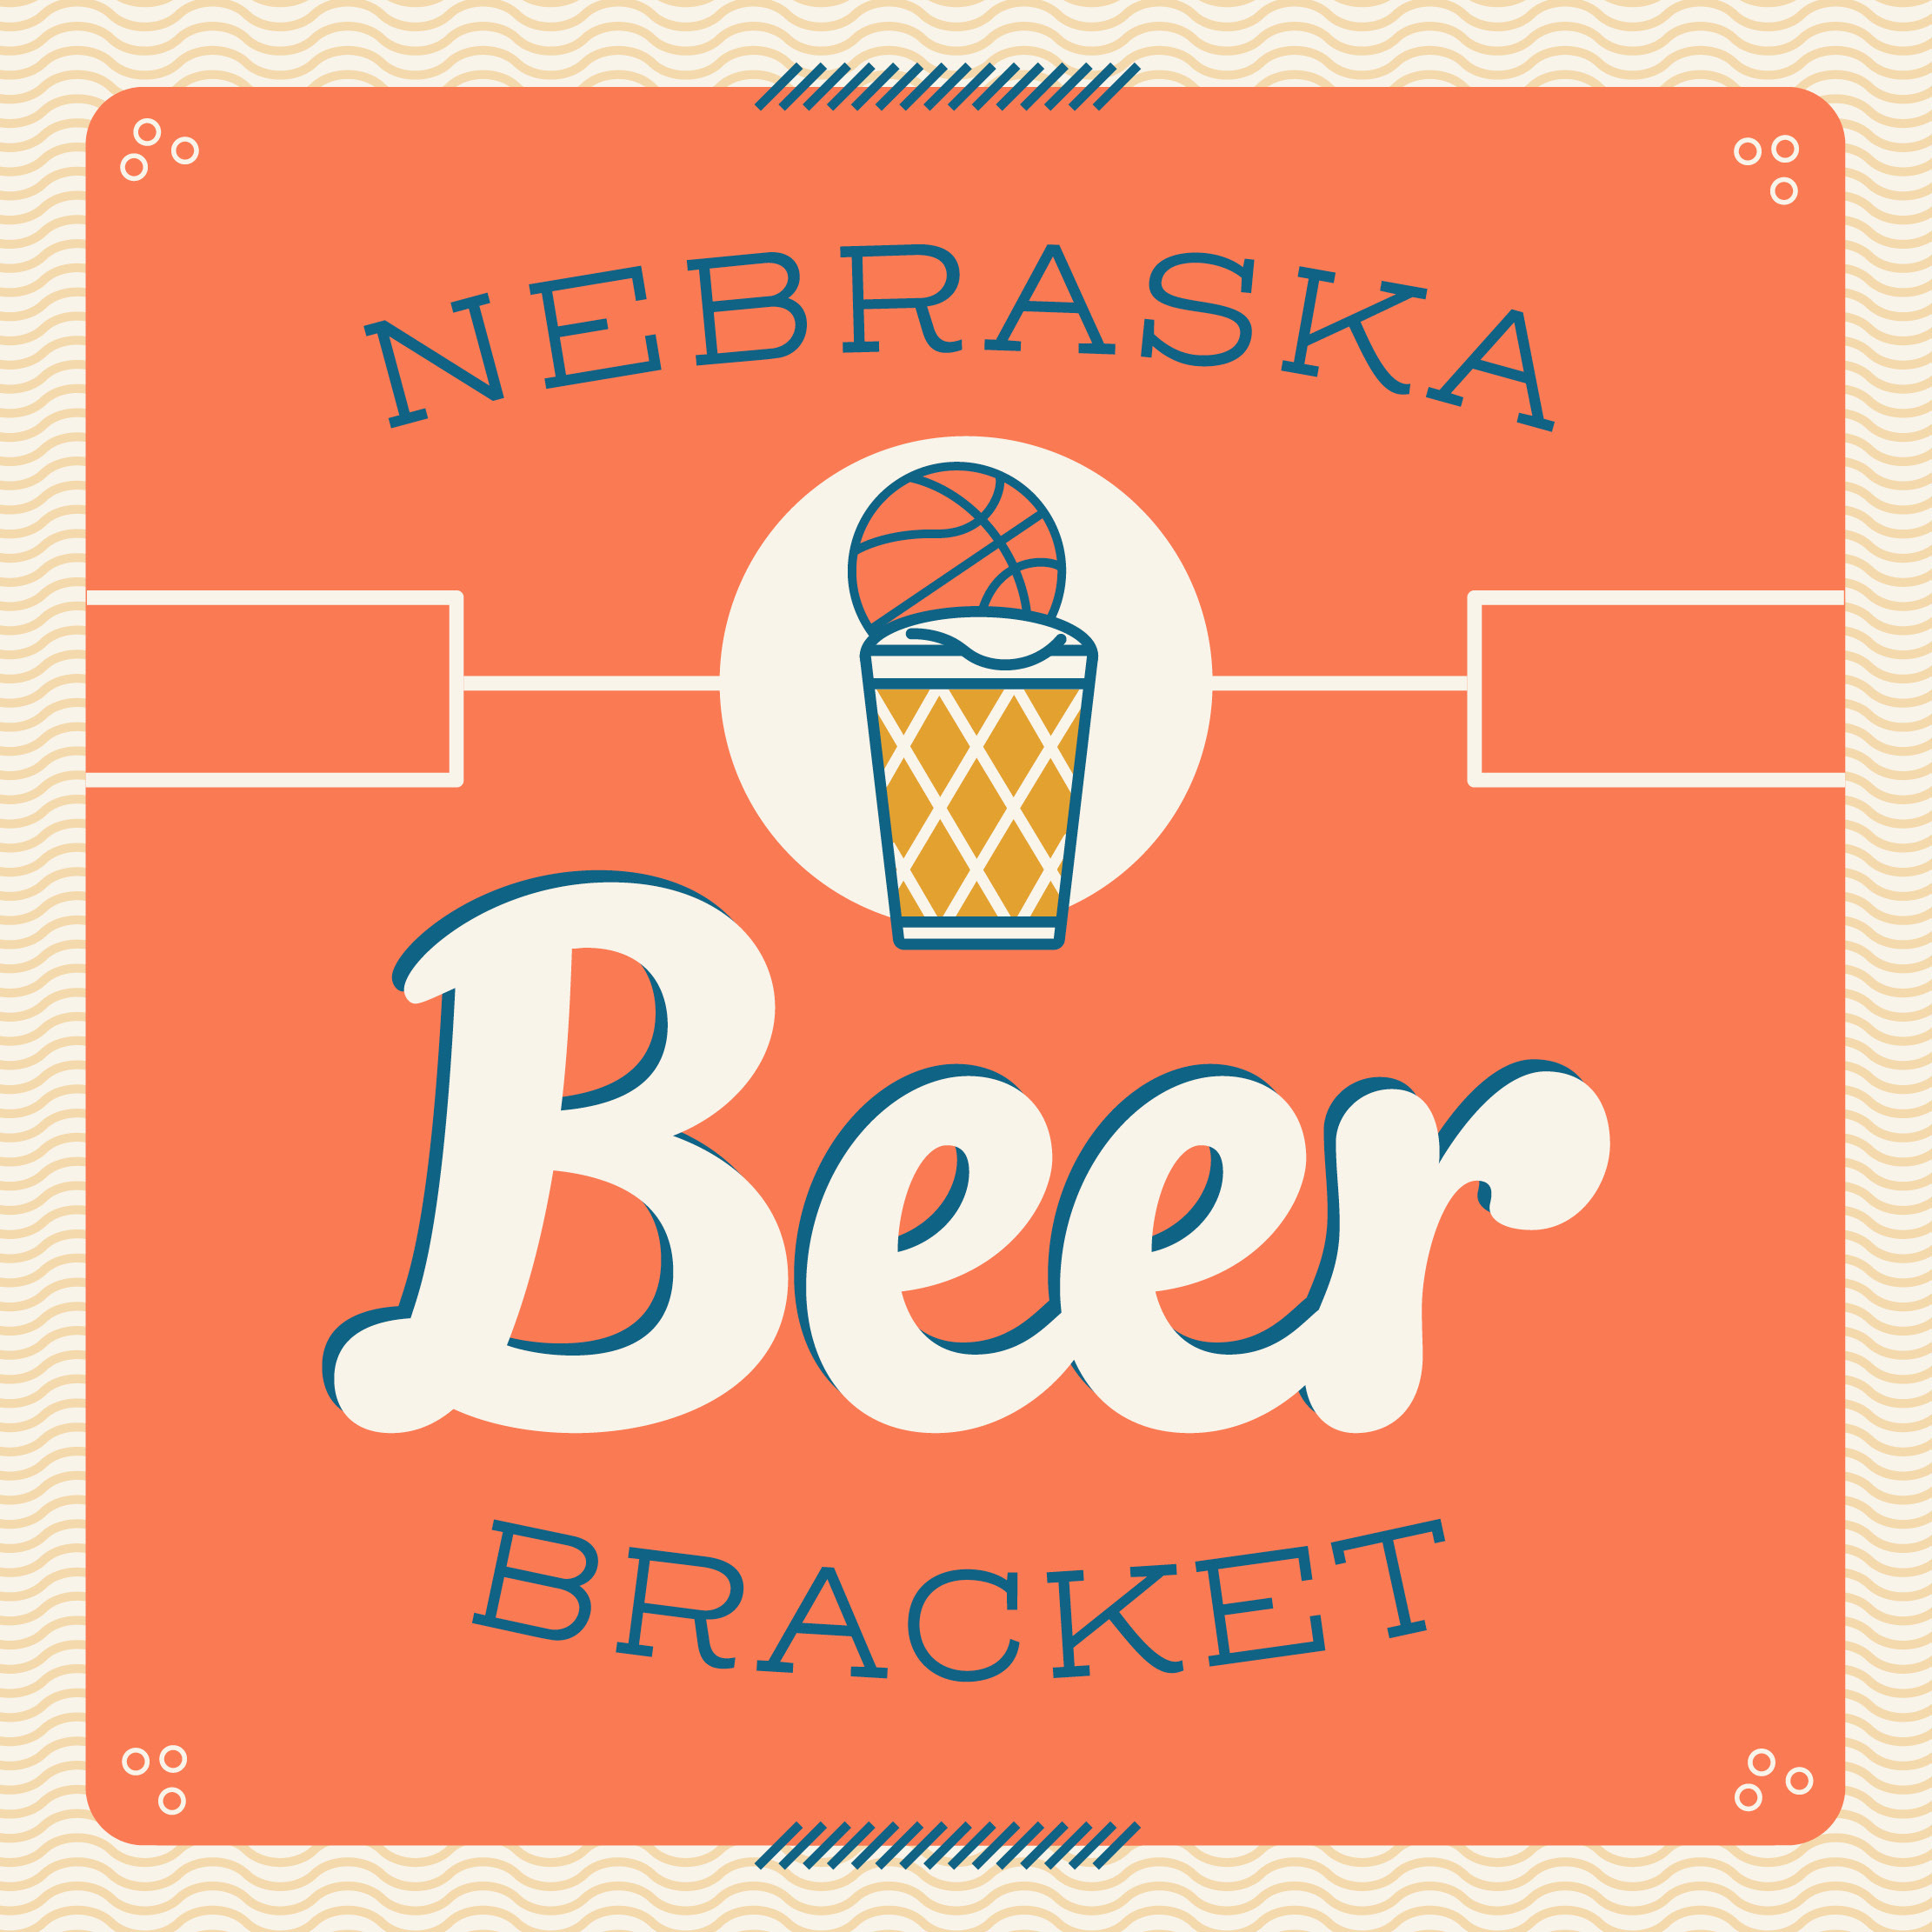 Help us choose 64 breweries for the statewide, 2023 Nebraska Beer Bracket